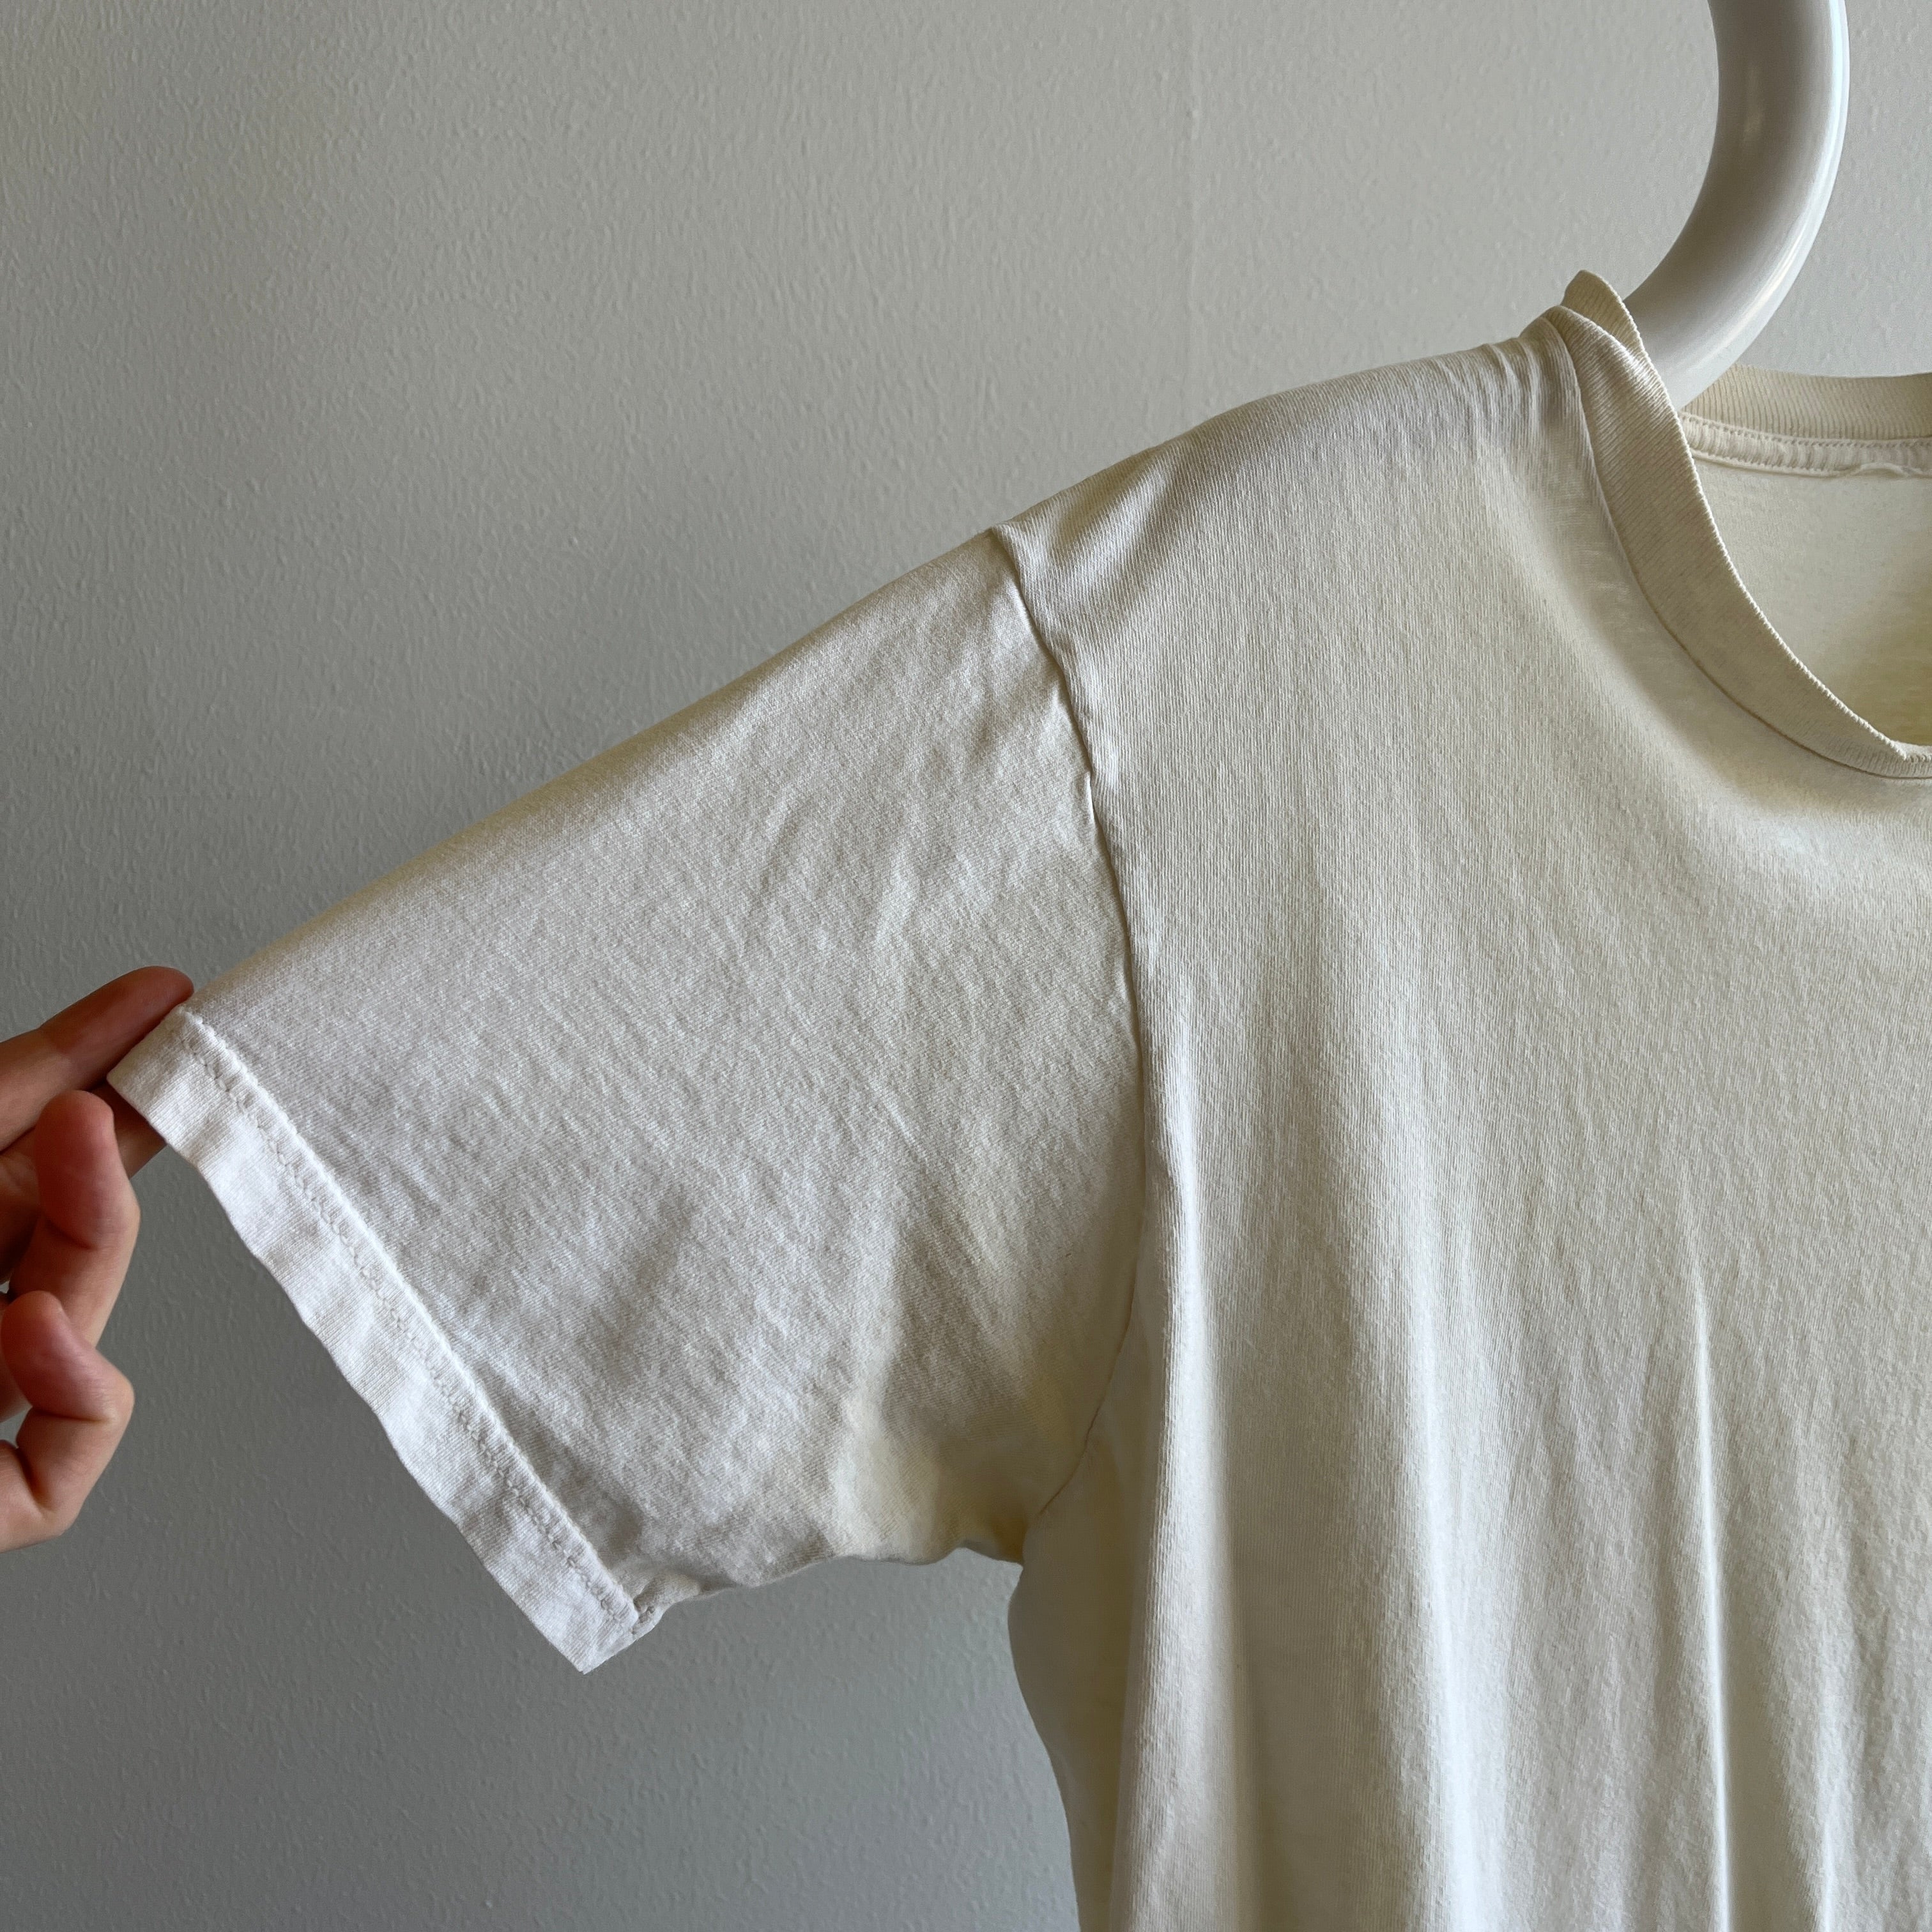 T-shirt blanc poussiéreux/écru des années 1980